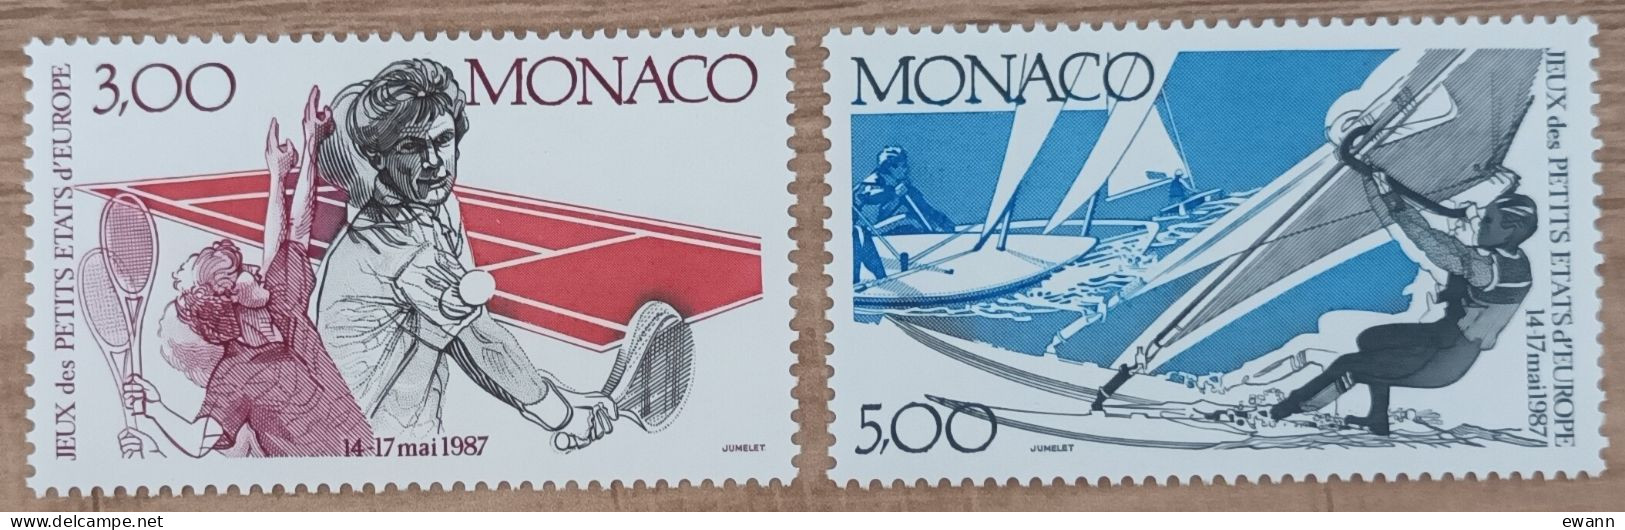 Monaco - YT N°1579, 1580 - 2es Jeux Des Petits Etats D'Europe - 1987 - Neuf - Neufs